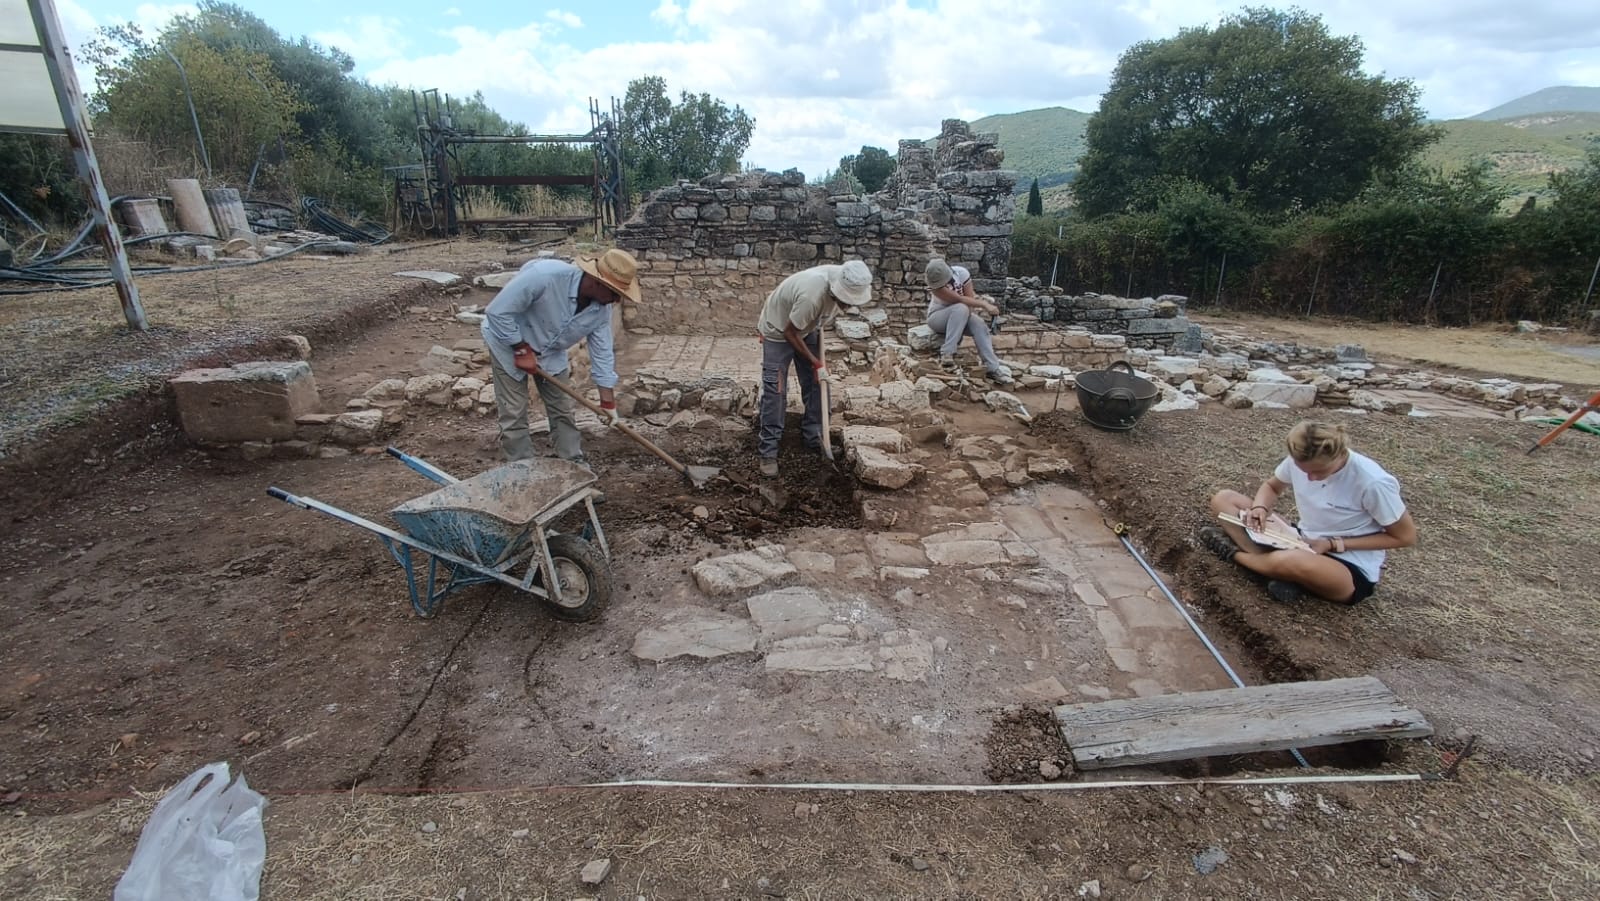 4η περίοδος ανασκαφικής έρευνας στην αρχαία Μεσσήνη από το ΑΠΚΥ σε συνεργασία με την Εταιρεία Μεσσηνιακών Αρχαιολογικών Σπουδών